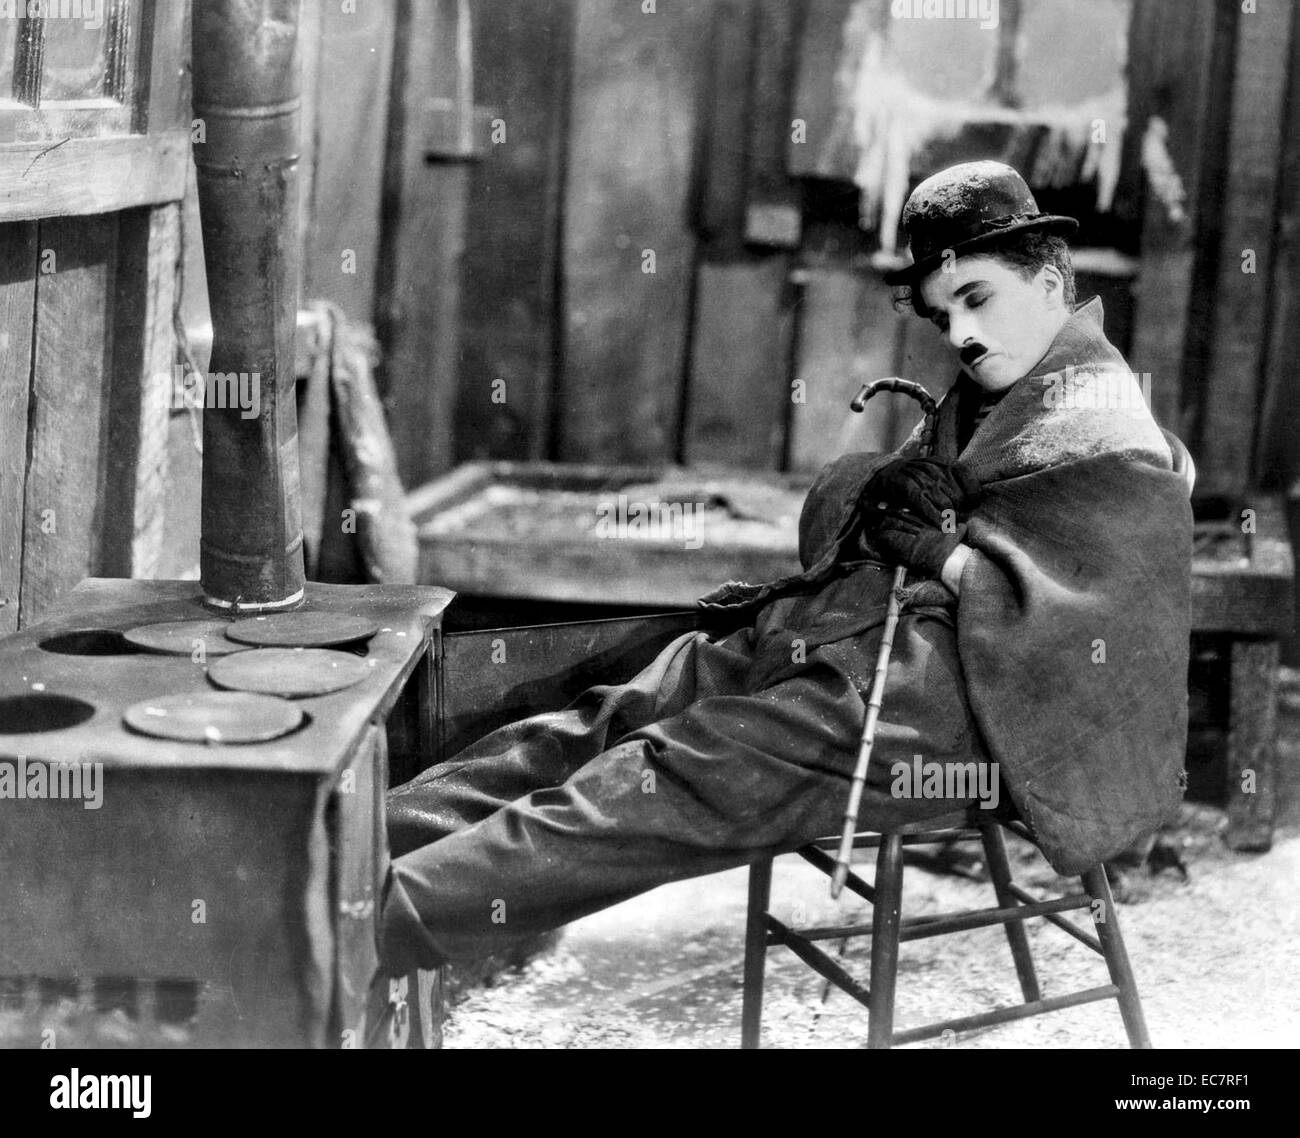 Der Gold Rush ist ein 1925 amerikanische Silent Comedy Film geschrieben, produziert, unter der Regie von und mit Charlie Chaplin in seinen kleinen Tramp Rolle. Der Film auch stars Georgia Hale, Mack Swain und Malcolm Waite. Chaplin mehrmals erklärt, dass dies der Film war, für die er die meisten wollten erinnert zu werden. Stockfoto